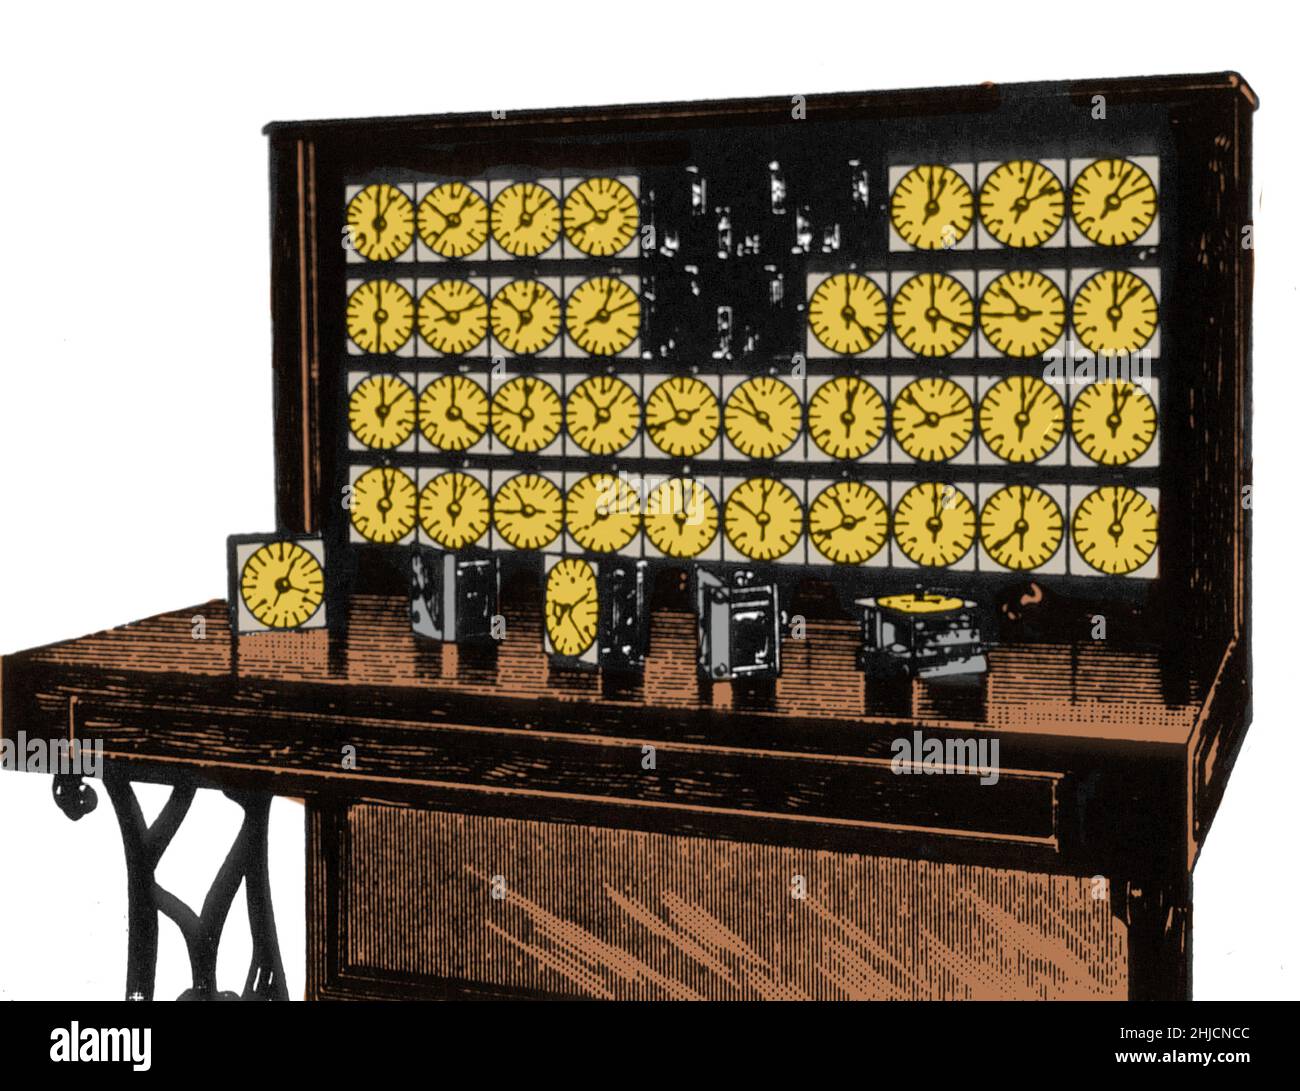 La machine de tabulation était un dispositif électrique conçu pour aider à résumer les informations. Inventée par Herman Hollerith, la machine a été développée pour aider à traiter les données du recensement américain de 1890. Les cartes étaient codées pour l'âge, l'état de résidence, le sexe et d'autres informations; les commis ont perforé des trous dans les cartes pour saisir des informations à partir des retours.le tabulateur avait 40 compteurs, chacun avec un cadran divisé en 100 divisions, avec deux mains indicatrices; l'une d'elles a étagé une unité avec chaque impulsion de comptage, l'autre qui a avancé une unité chaque fois que l'autre cadran a fait un tour complet. Cet arran Banque D'Images